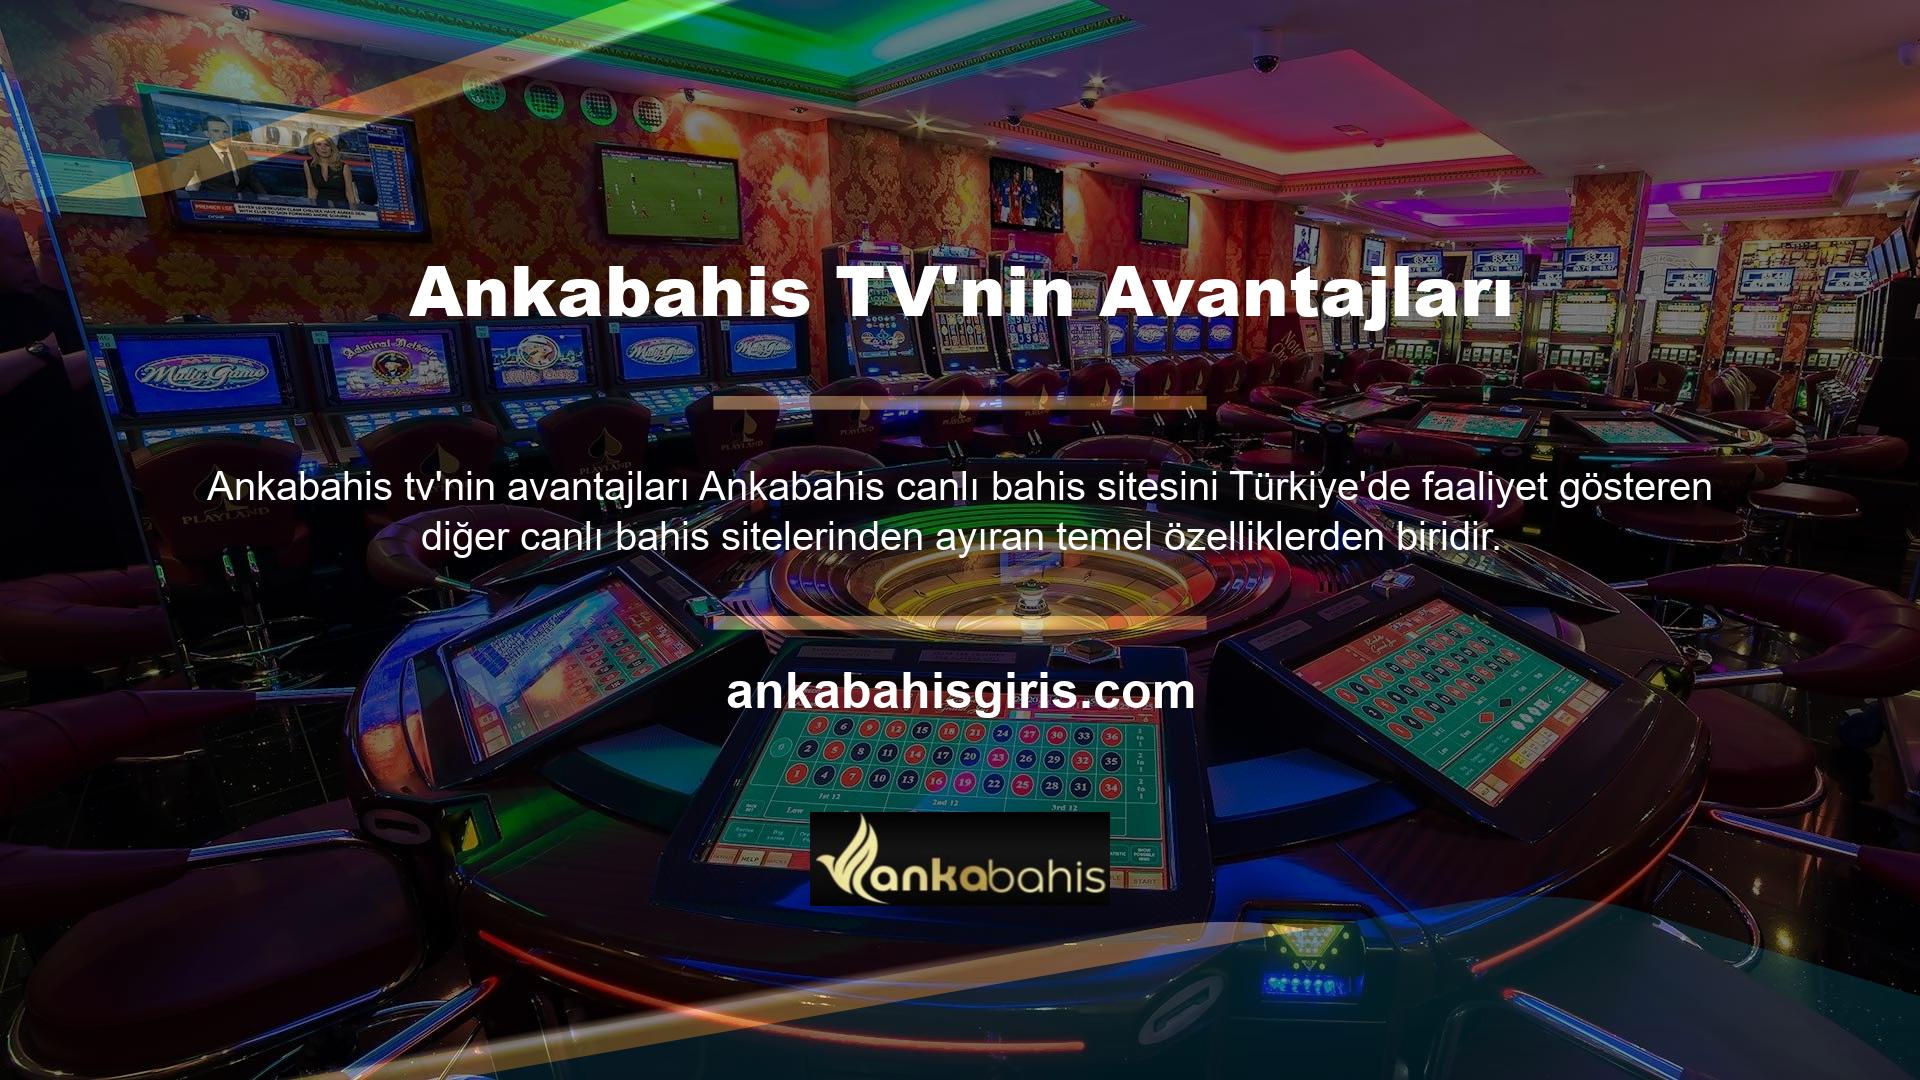 Ankabahis TV, Ankabahis sitesinde üyelere sunulan bir diğer hizmettir